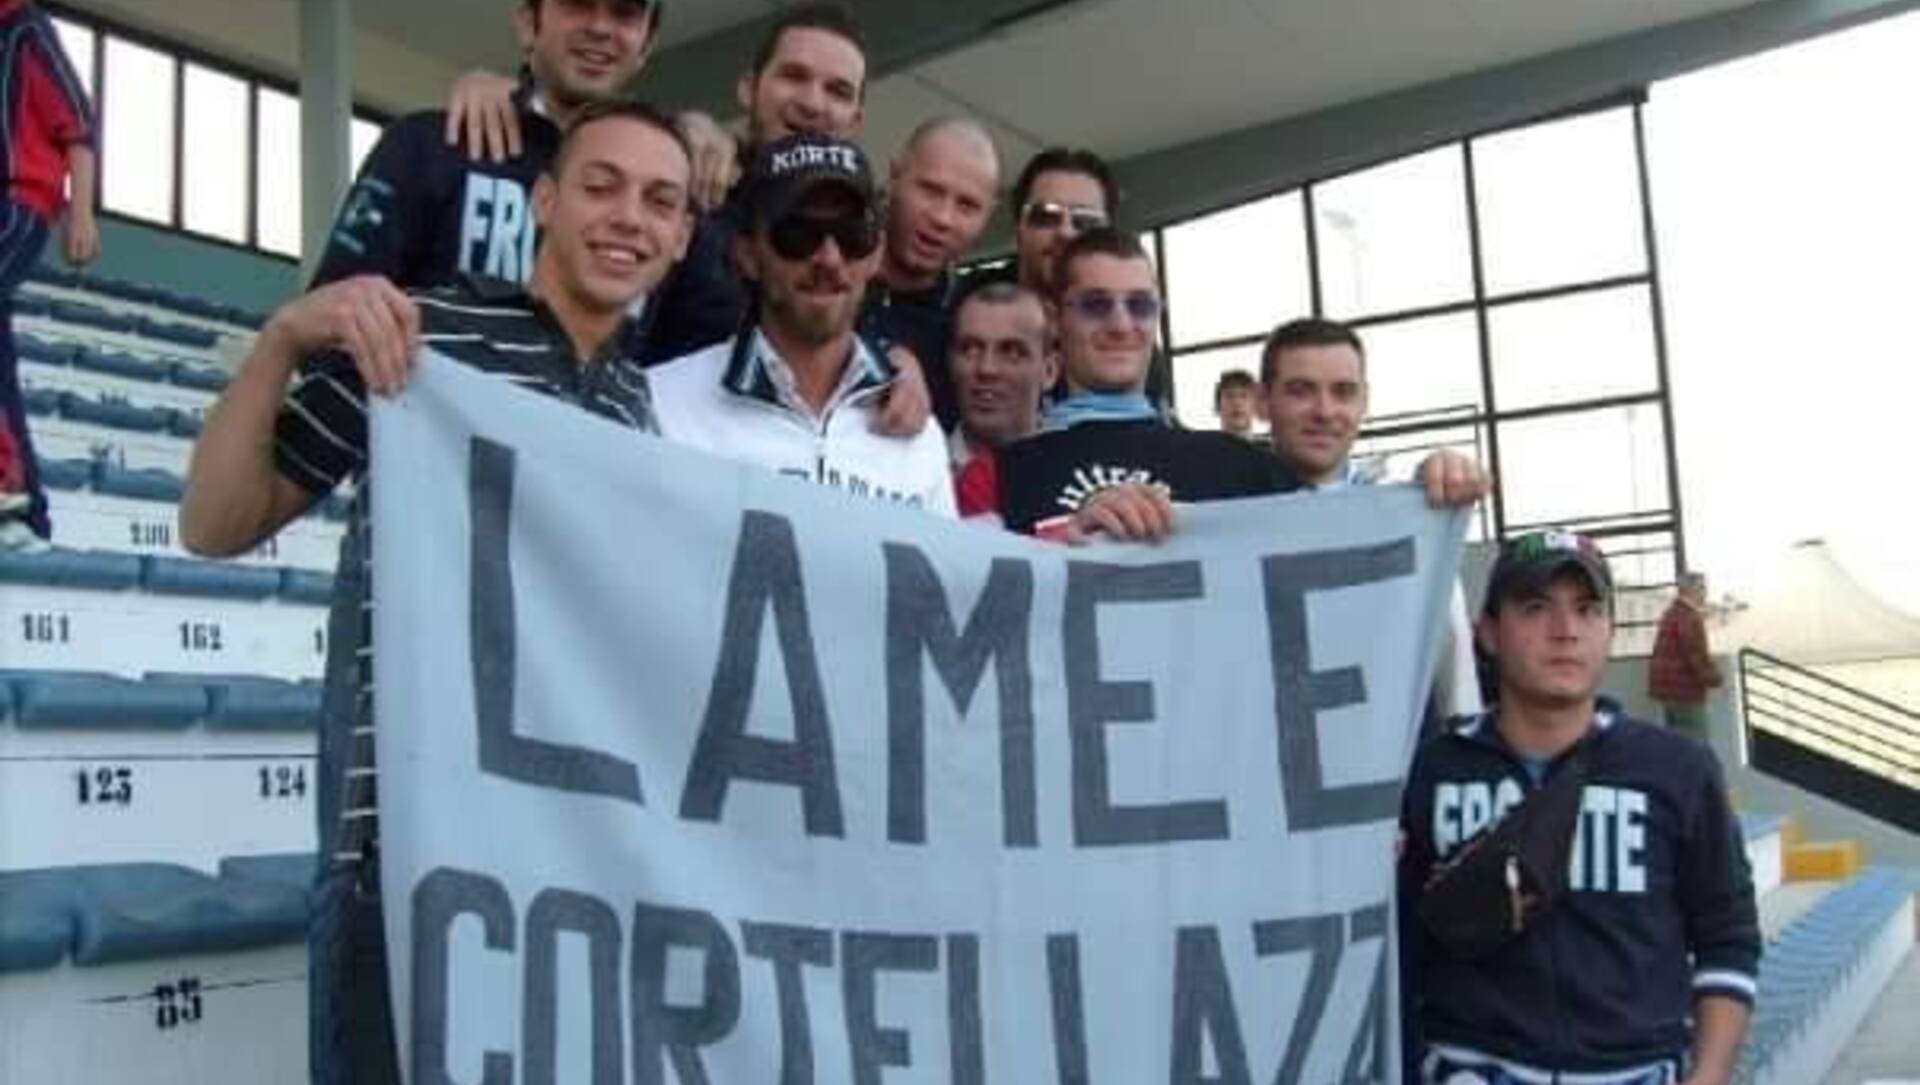 Calcio Eccellenza, l’intervista esclusiva a Umberto Cortelazzi, ex Fbc, in un emozionante incrocio con il passato nell’anticipo Milanese-Saronno